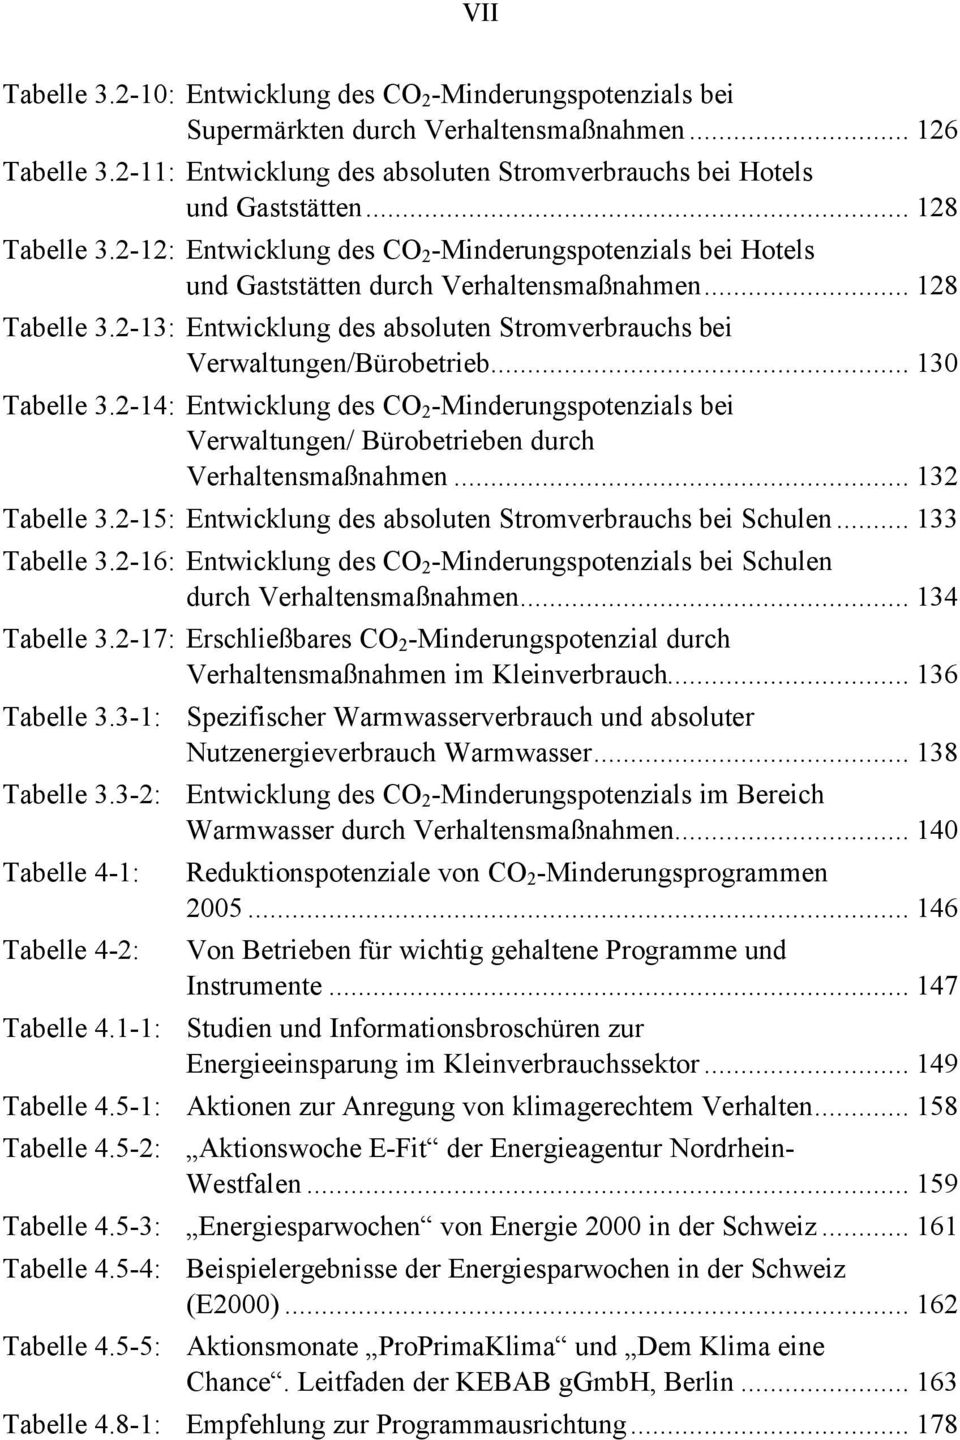 .. 130 Tabelle 3.2-14: Entwicklung des CO 2 -Minderungspotenzials bei Verwaltungen/ Bürobetrieben durch Verhaltensmaßnahmen... 132 Tabelle 3.